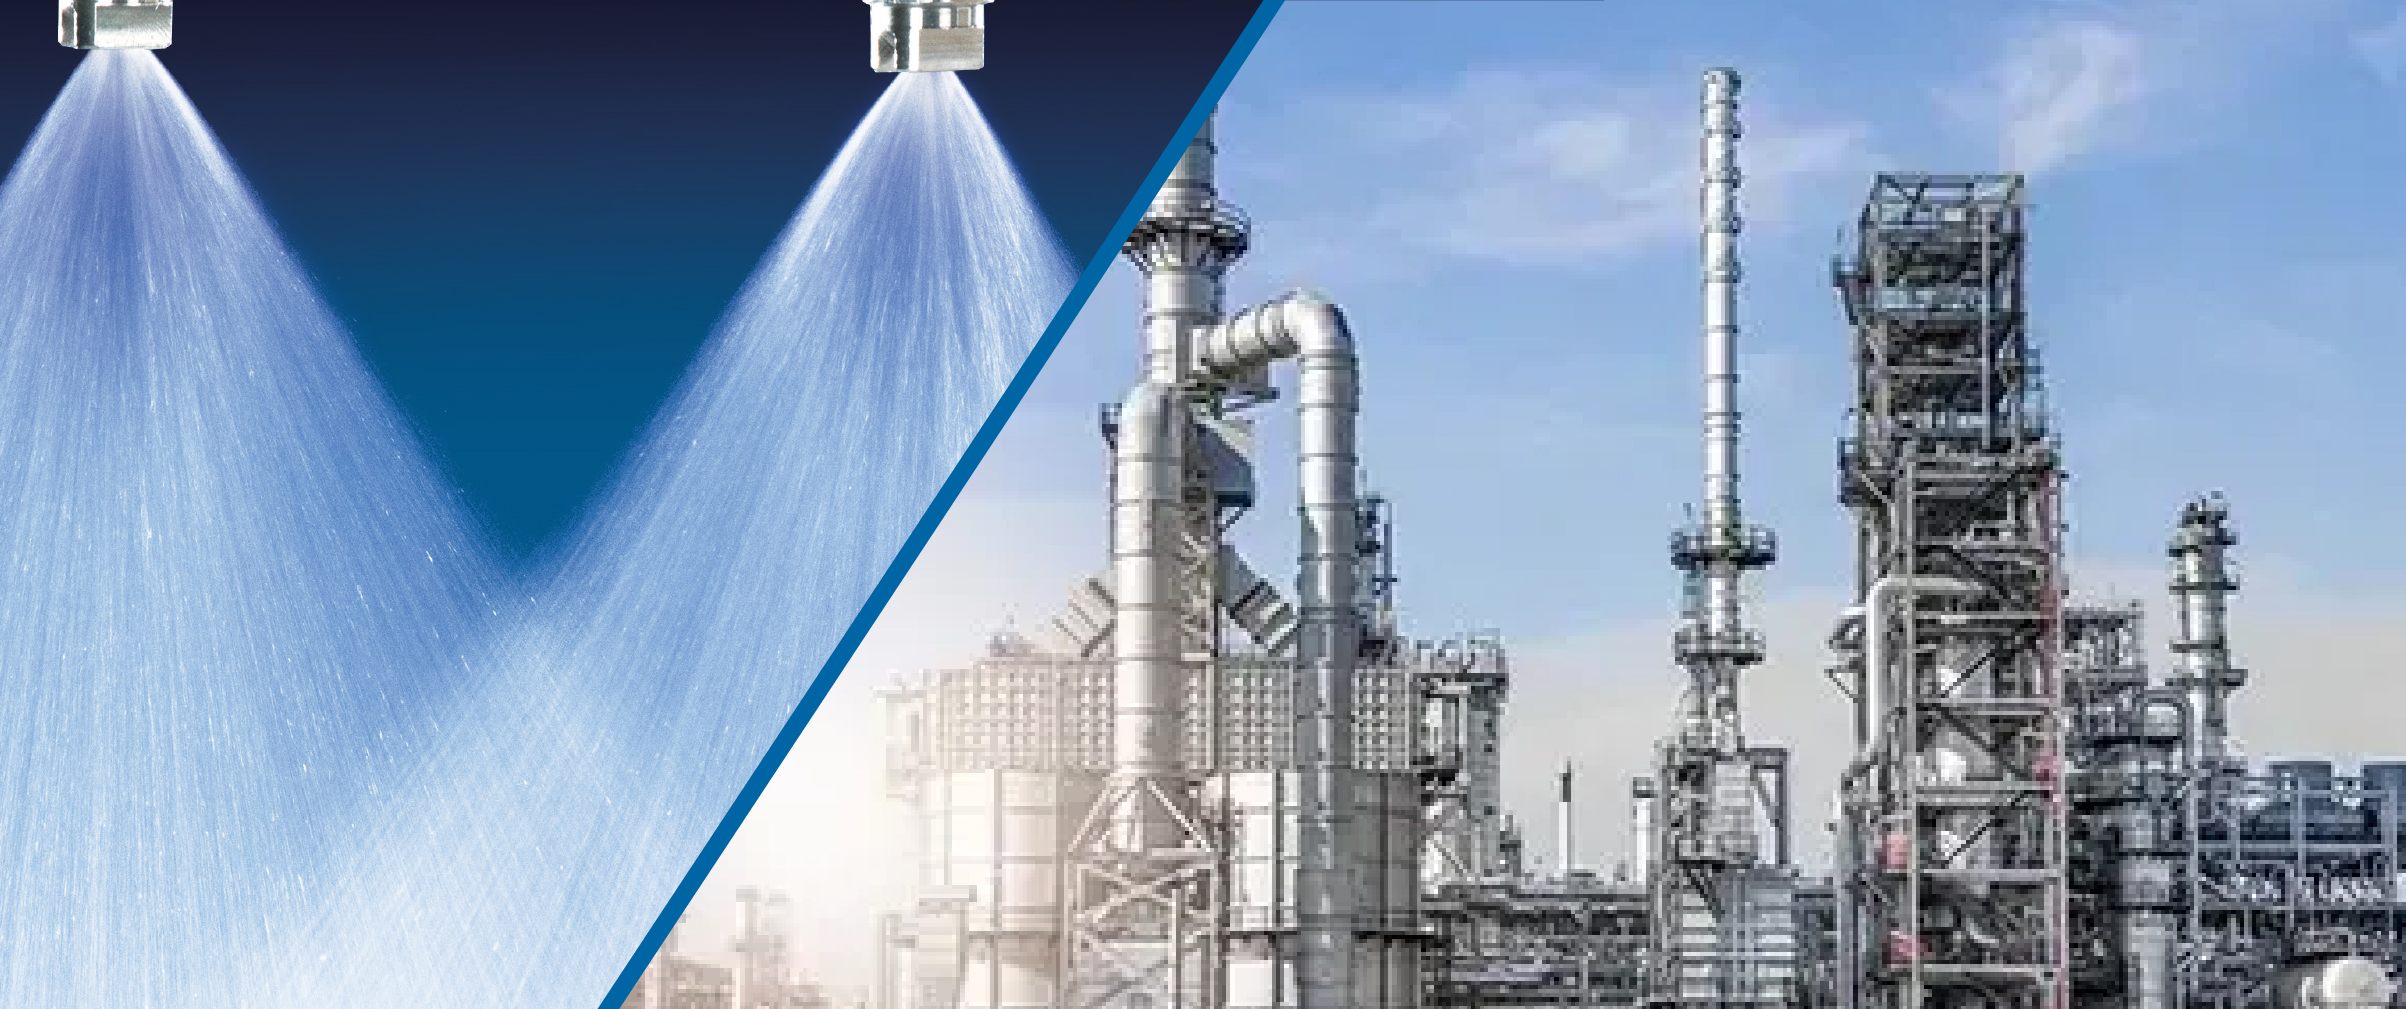 Com bicos precisos para a secagem, refinaria de biodiesel adequa-se à ANP e aumenta produtividade